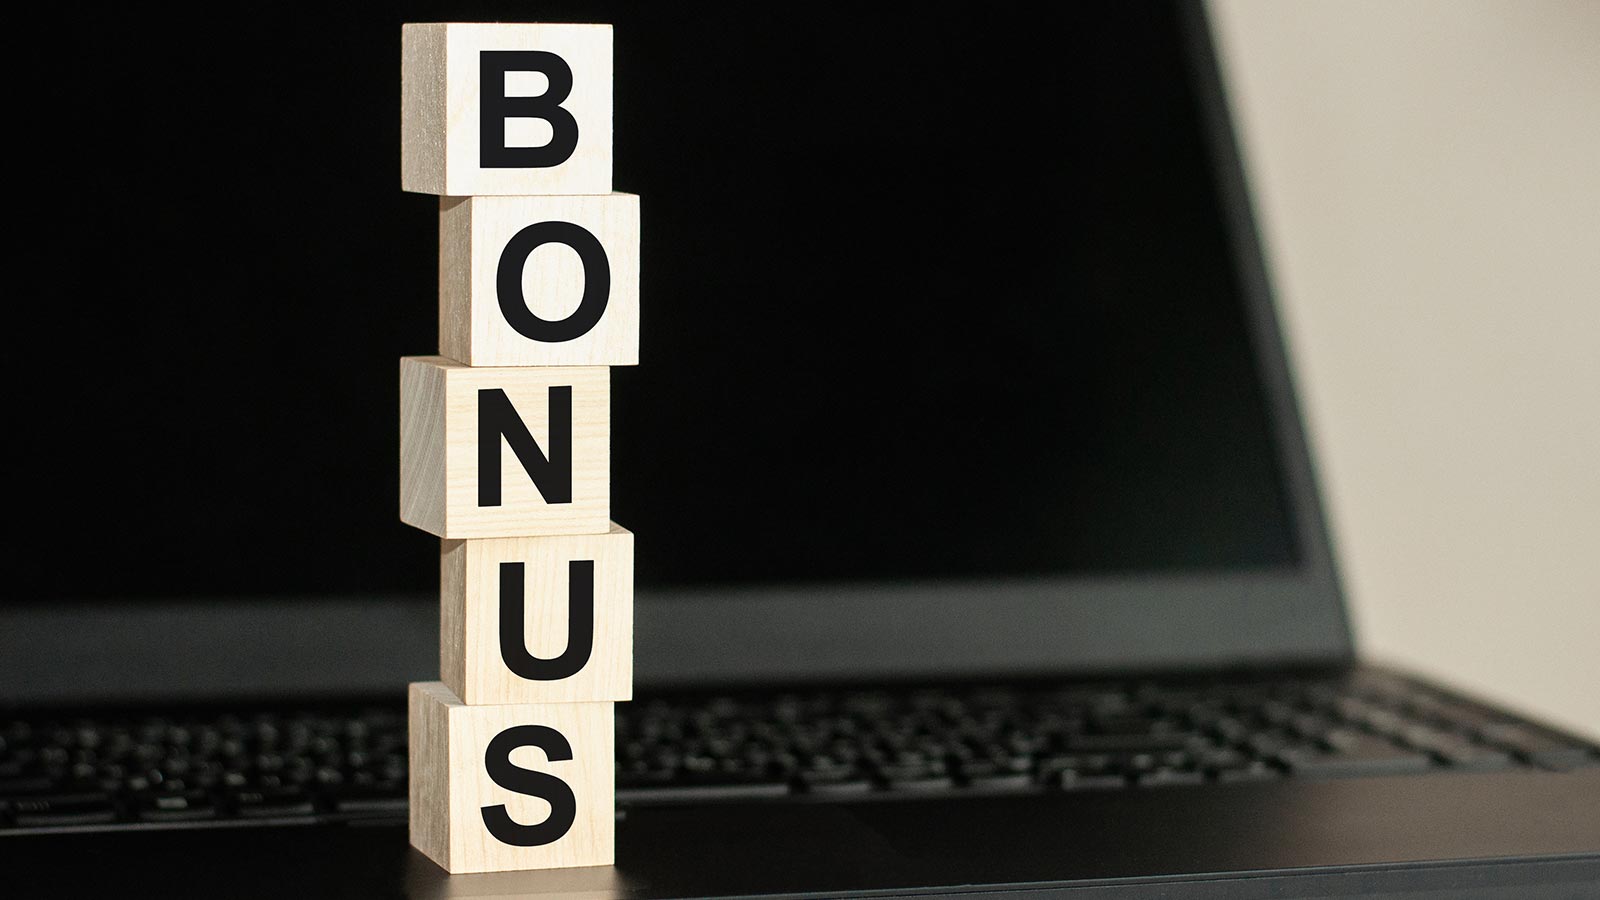 Bonusurile oferite de cazinou sunt supuse unor reguli